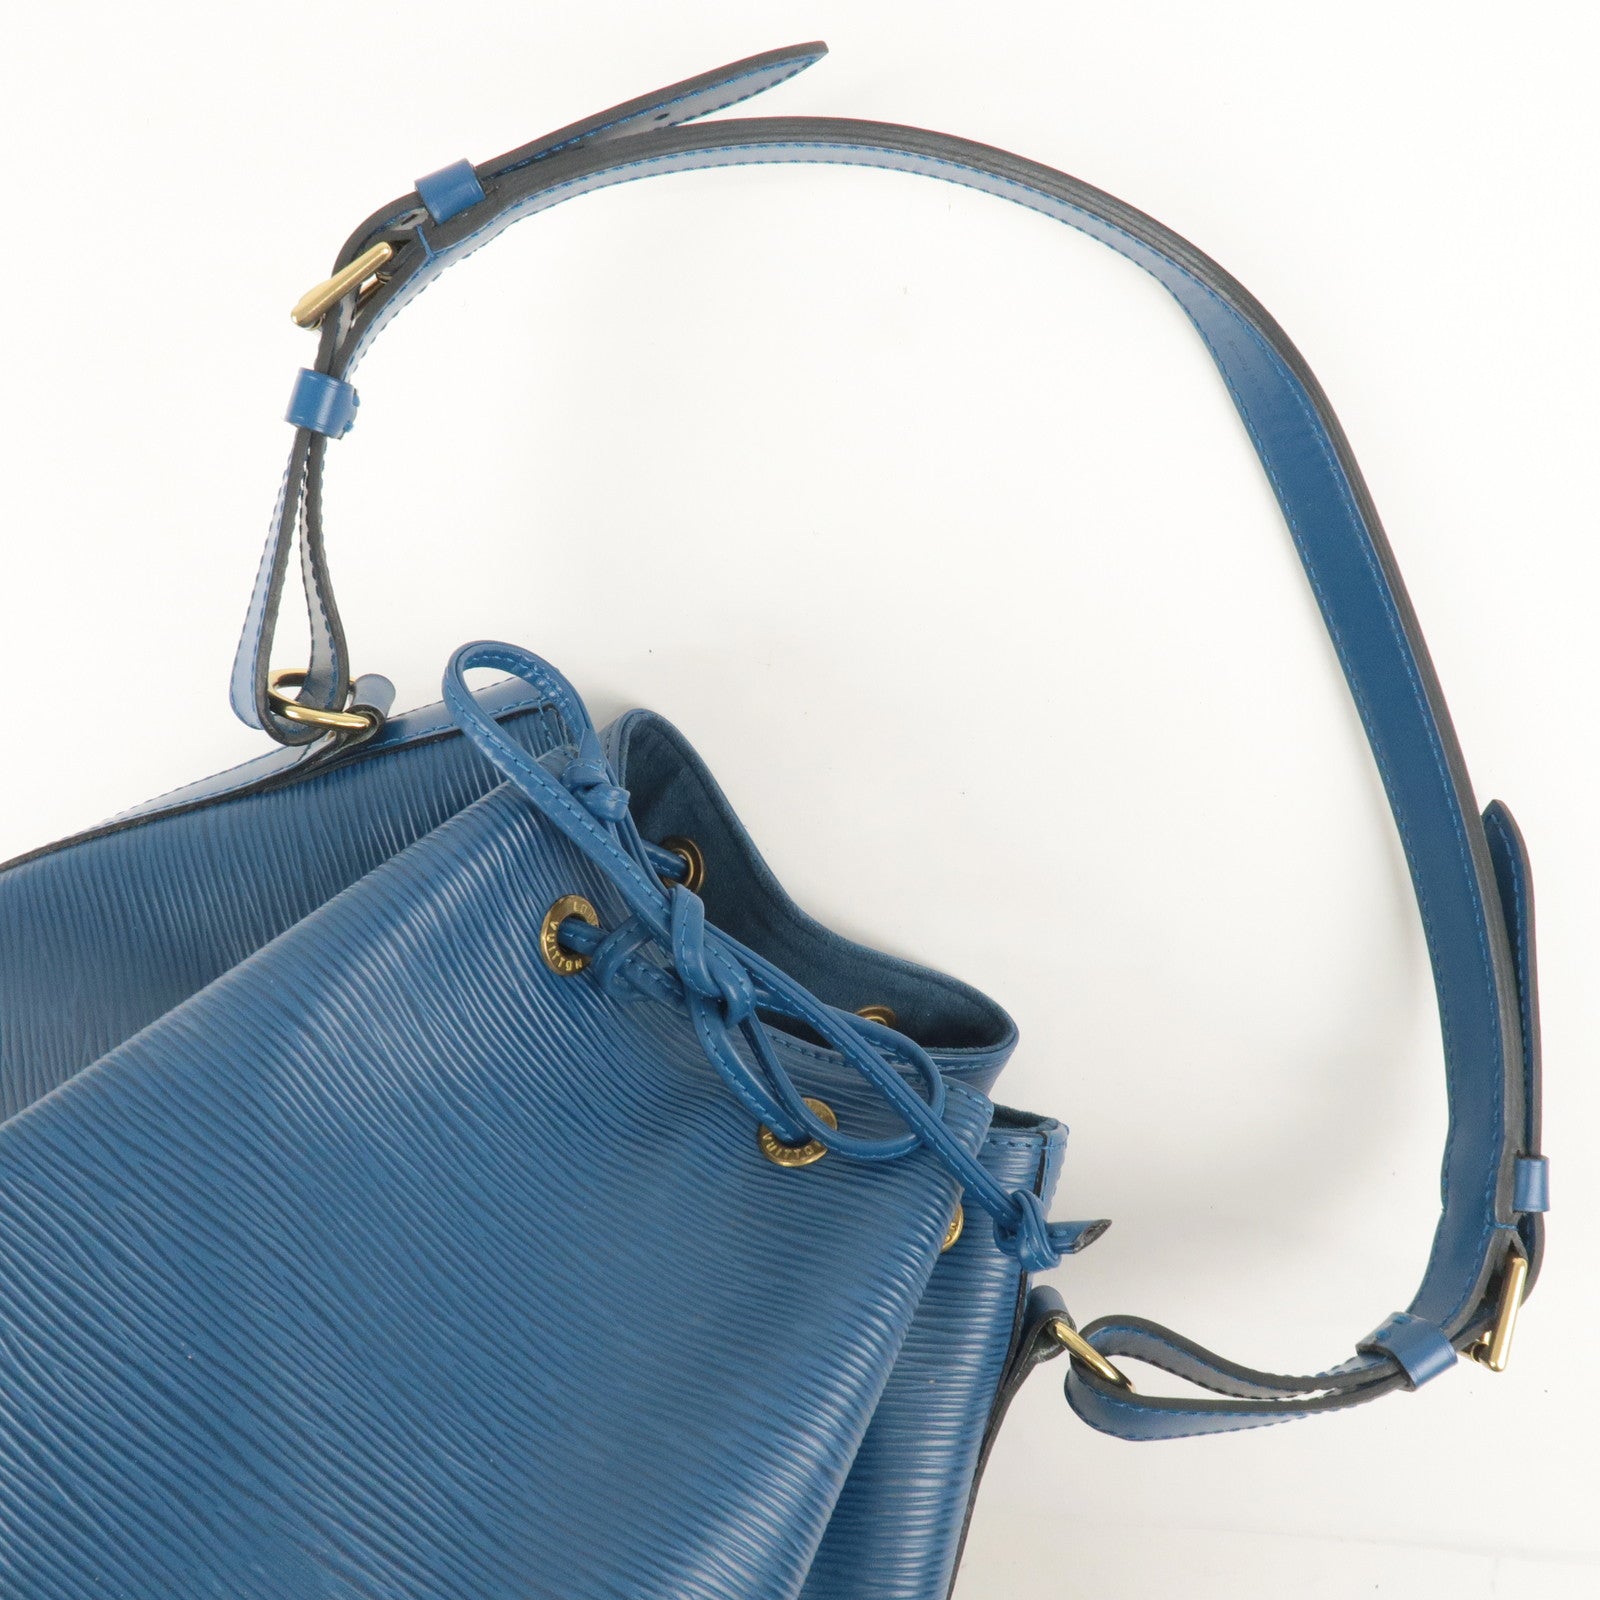 Auth Louis Vuitton Epi Petit Noe M44105 Women's Shoulder Bag Toledo Blue